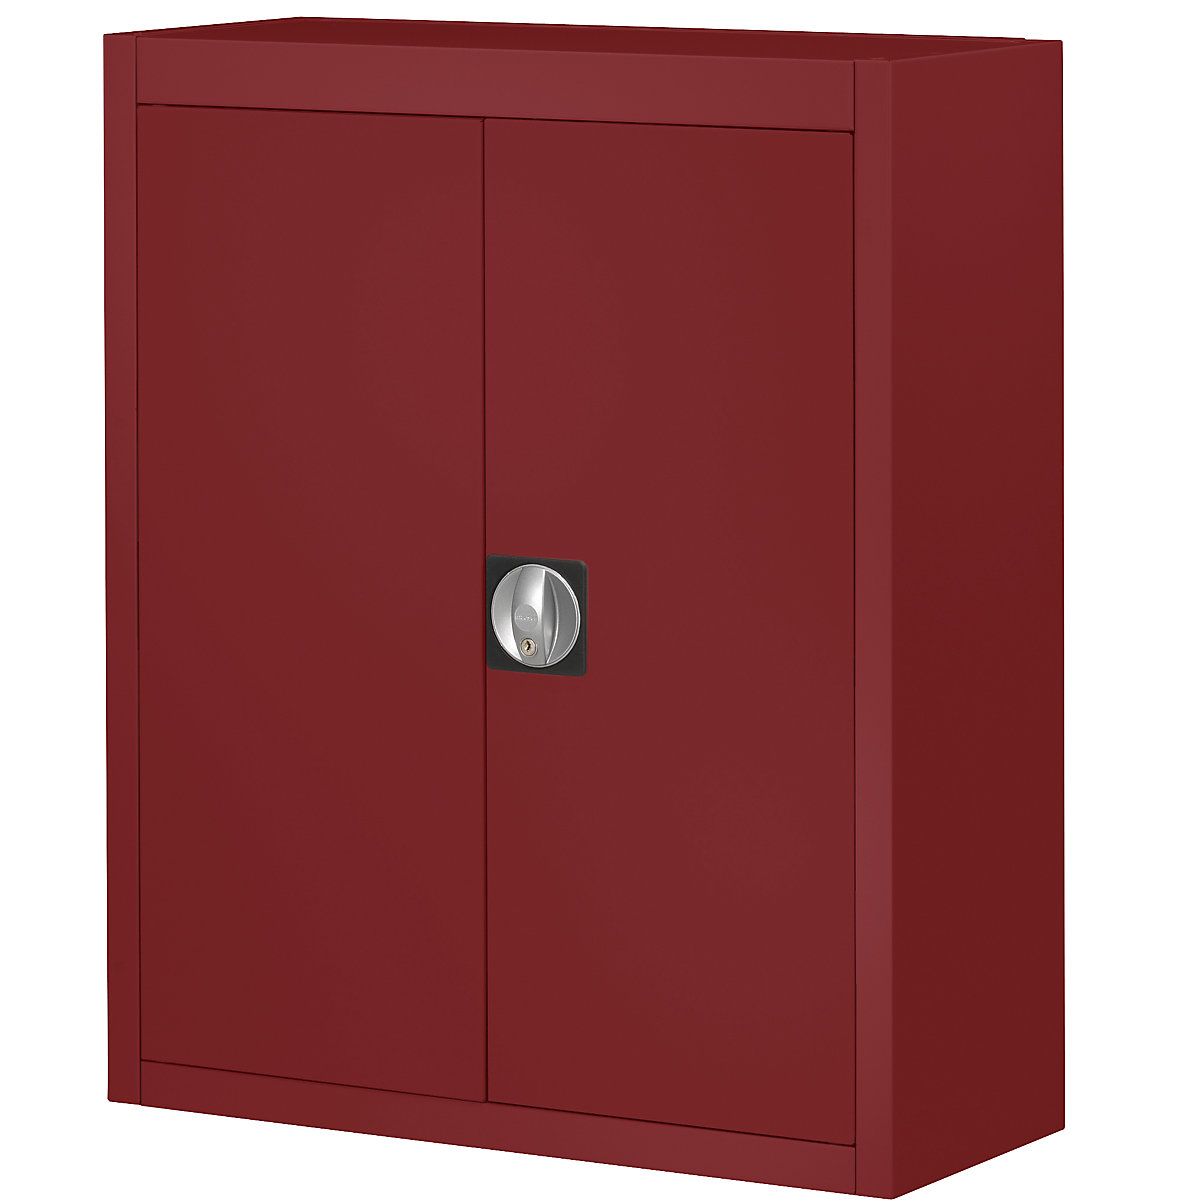 Skladová skříň, bez přepravek s viditelným obsahem – mauser, v x š x h 820 x 680 x 280 mm, jednobarevná, červená, od 3 ks-4